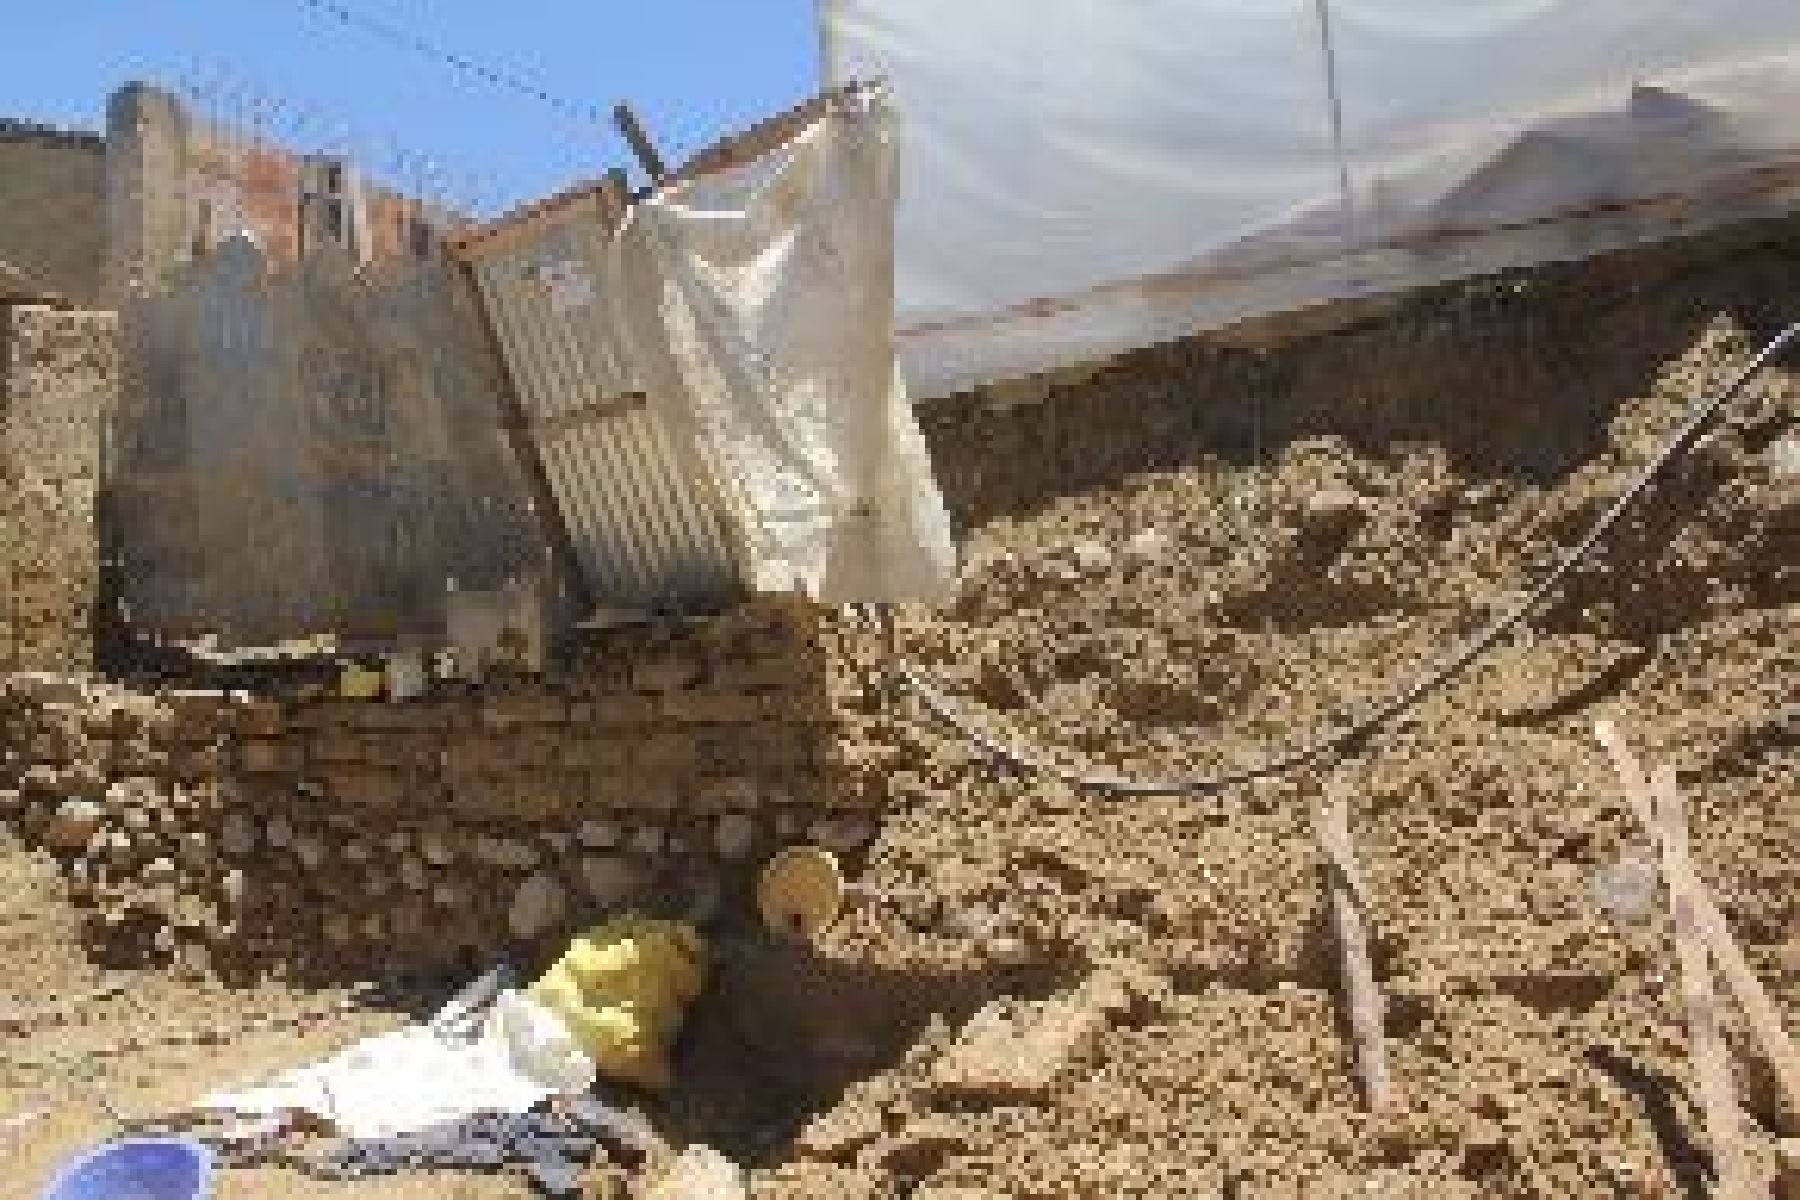 Lluvias provocaron el colapso de la pared de una rústica vivienda en el sector San Luis, distrito de Amarilis.